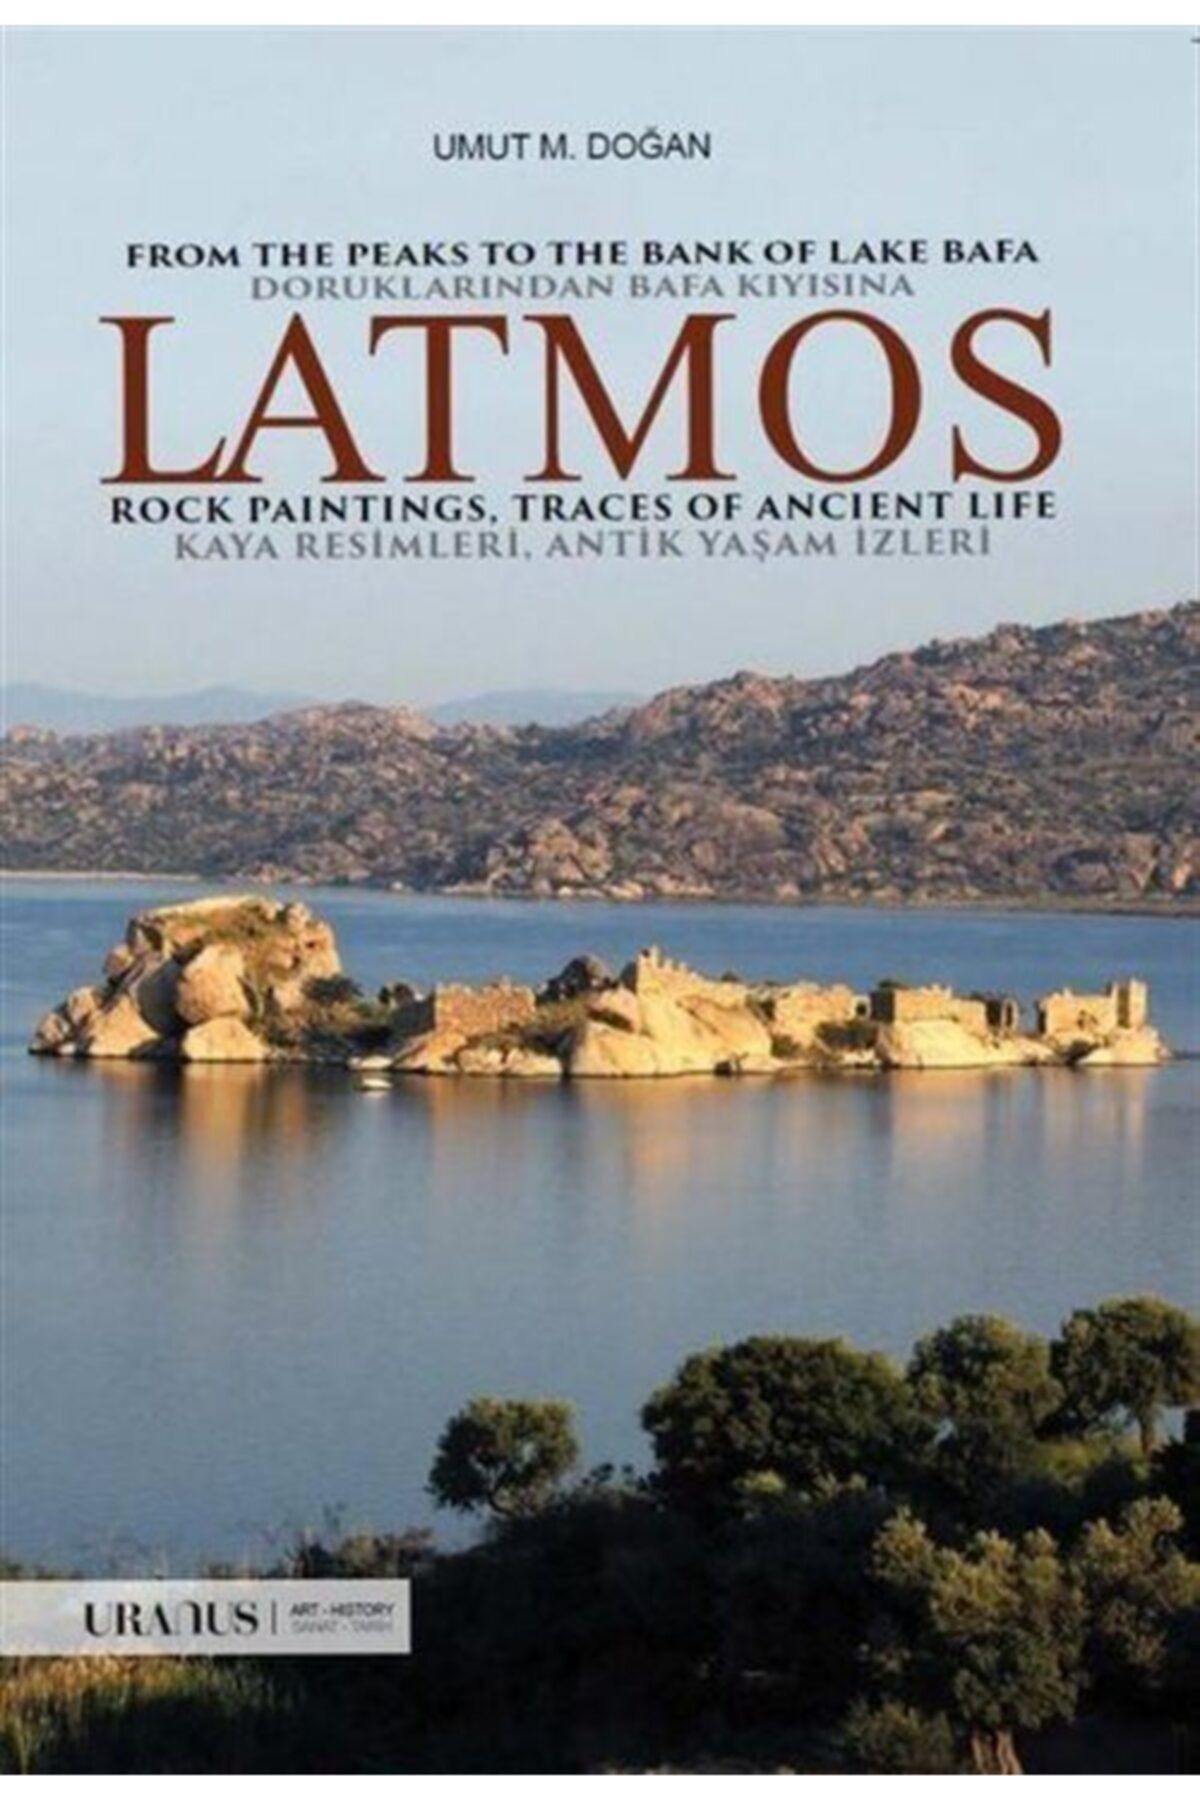 Romans Doruklarından Bafa Kıyısına: Latmos - Kaya Resimleri - Antik Yaşam Izleri